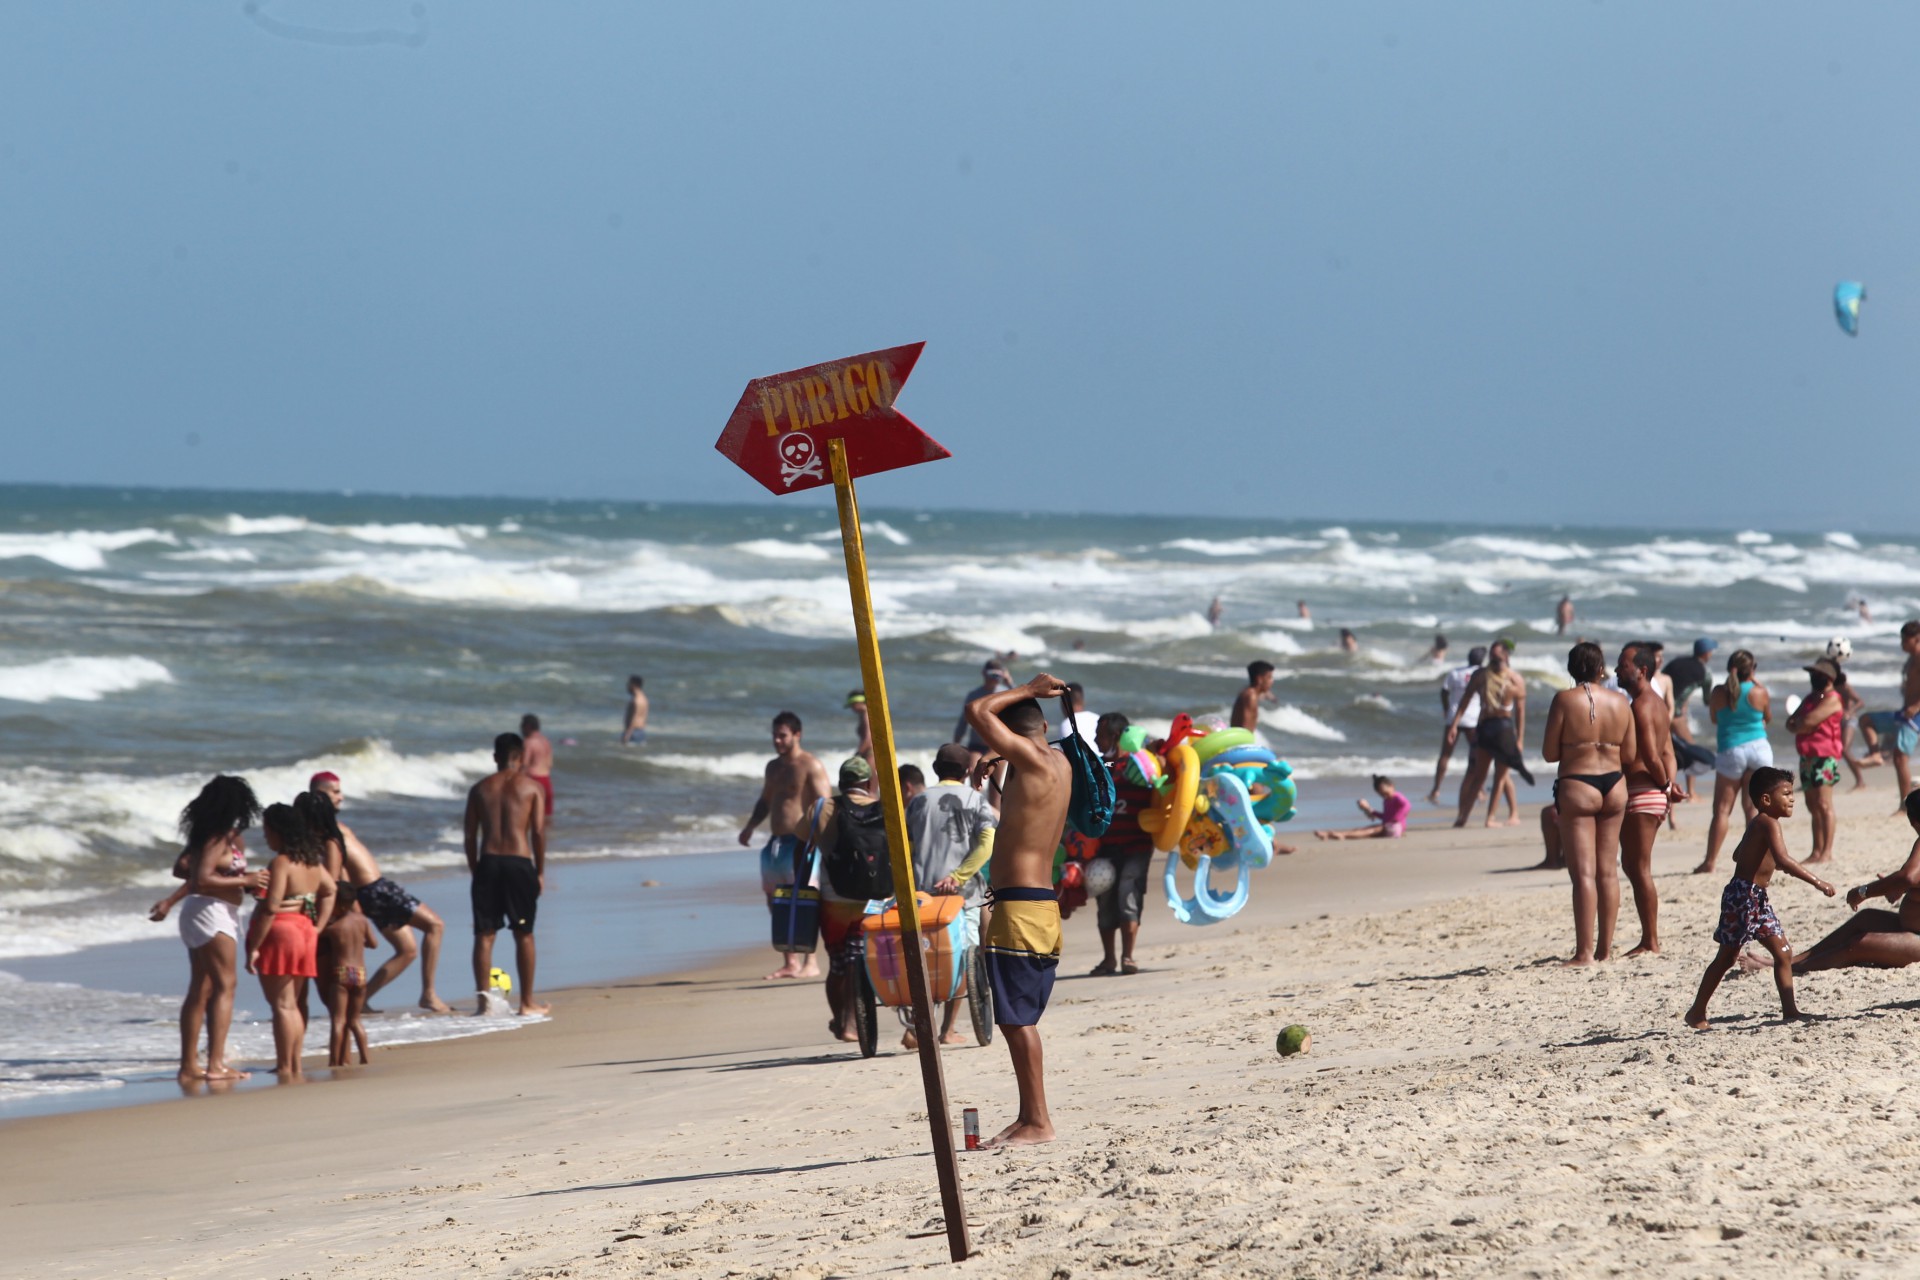 FORTALEZA,CE, BRASIL, 21.02.2021: Praia fica lotada após fechamento de barracas de acordo com decreto estadual.  (Fotos: Fabio Lima/O POVO) (Foto: FABIO LIMA)